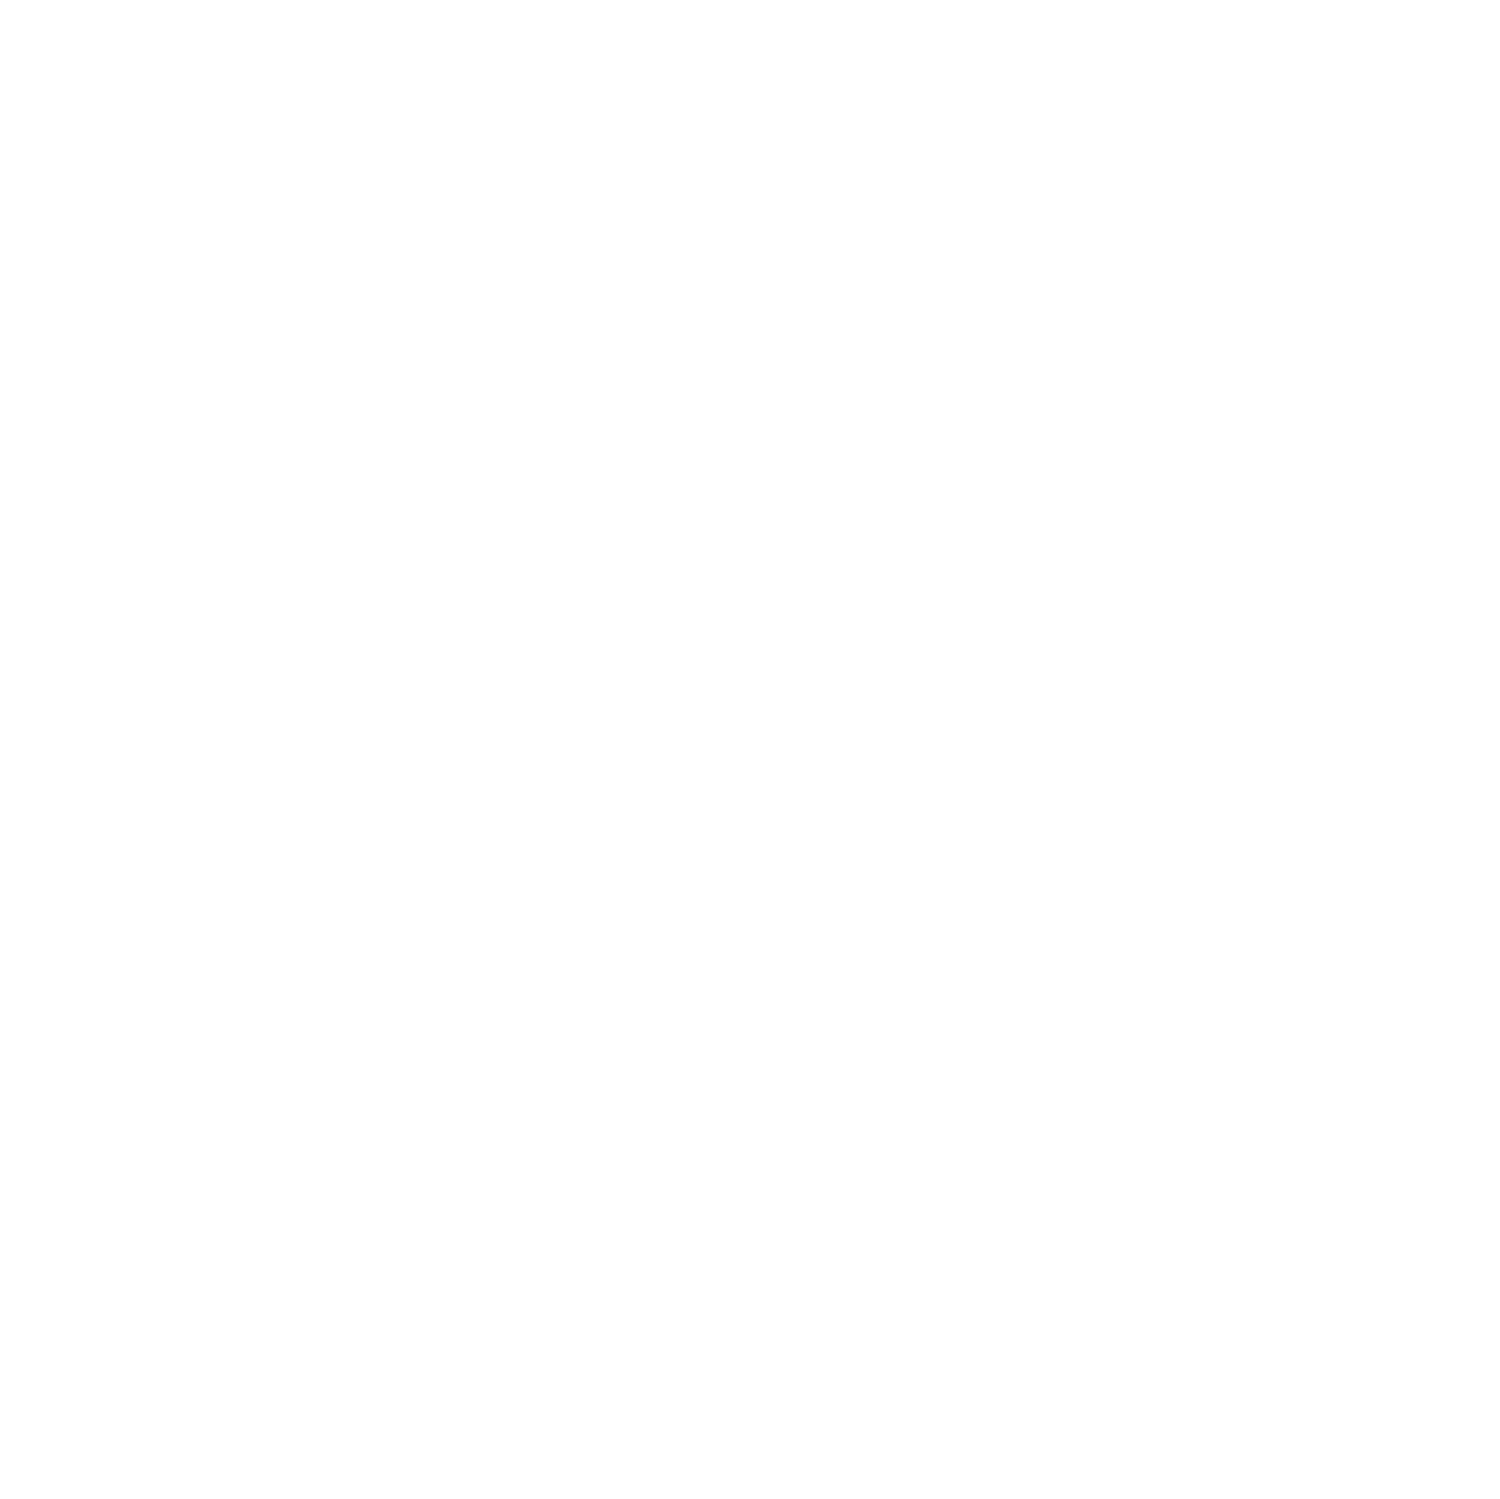  Jordan Mobley Photography